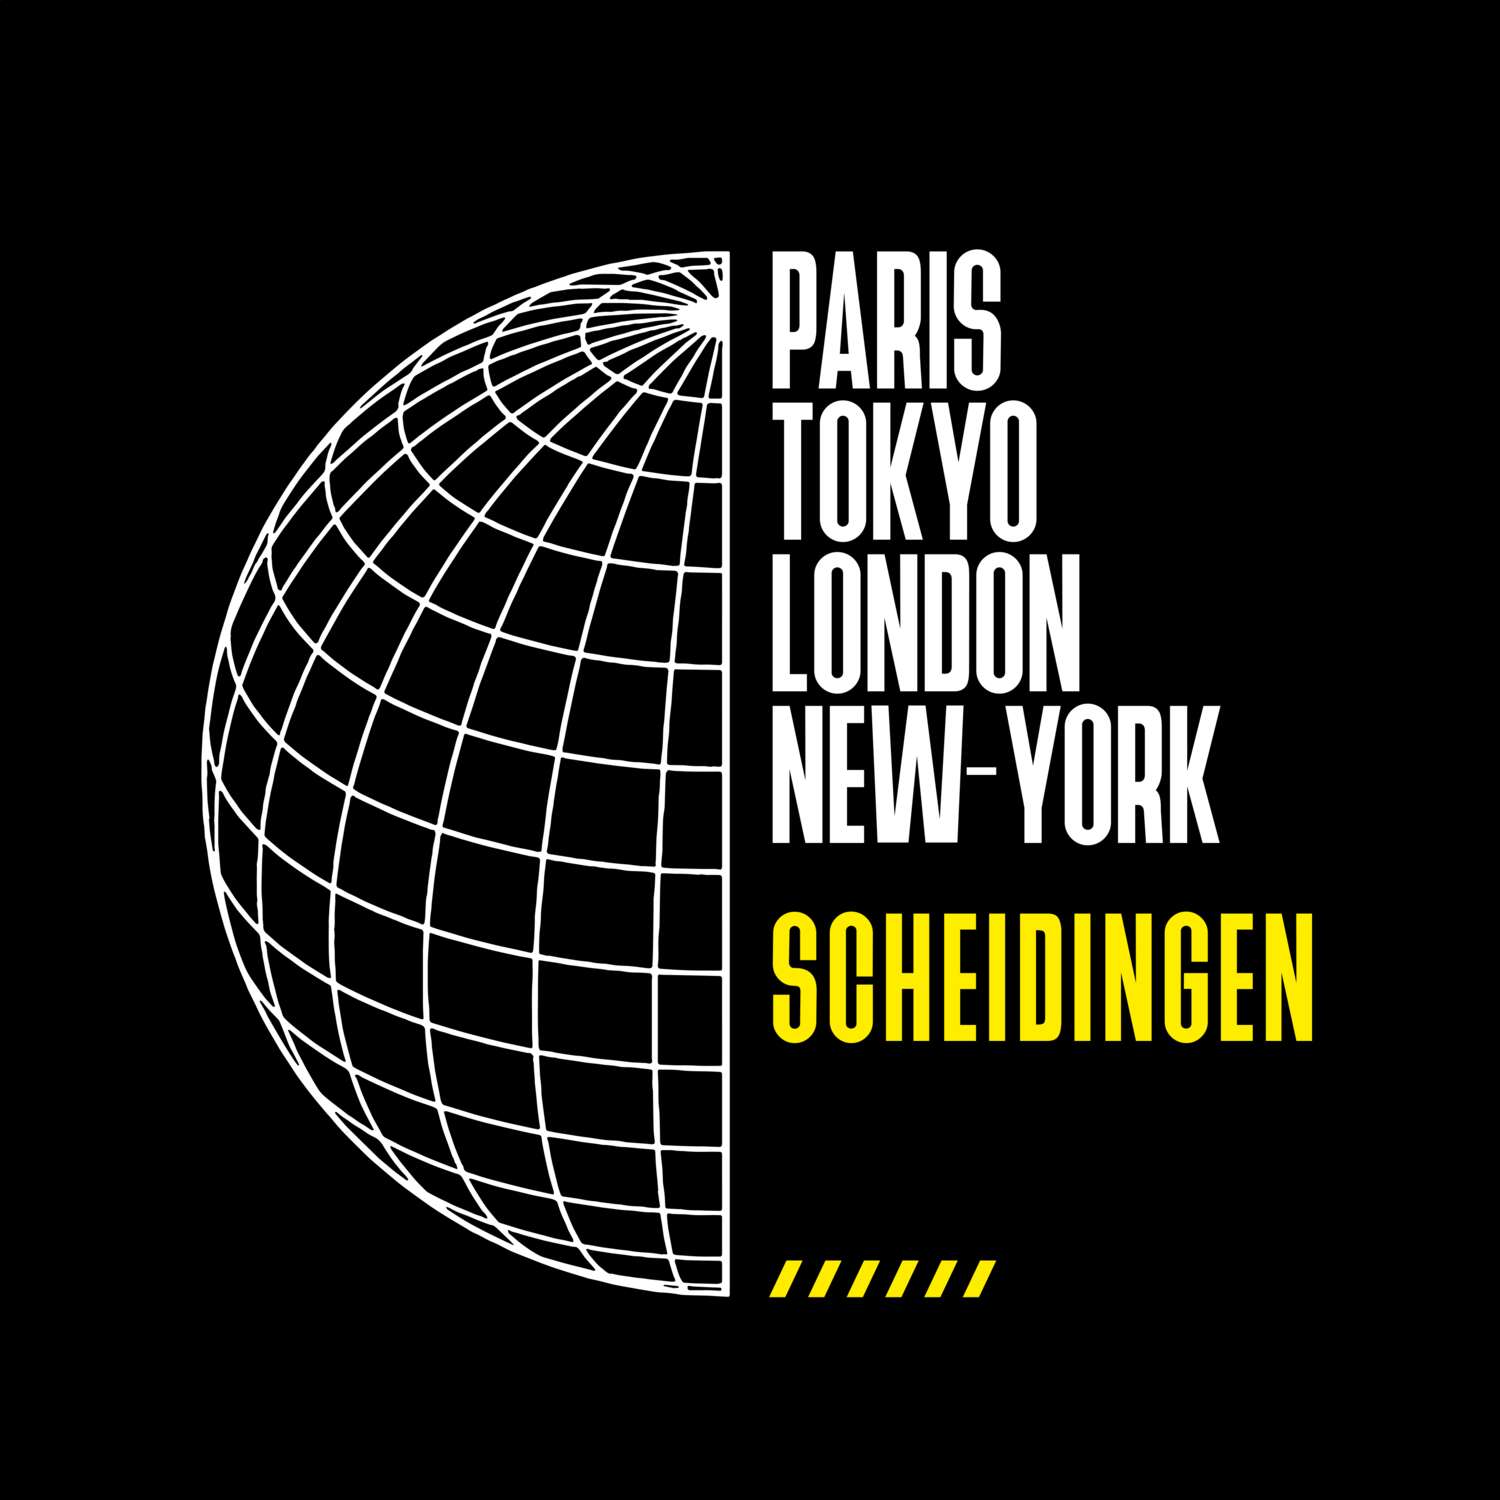 Scheidingen T-Shirt »Paris Tokyo London«